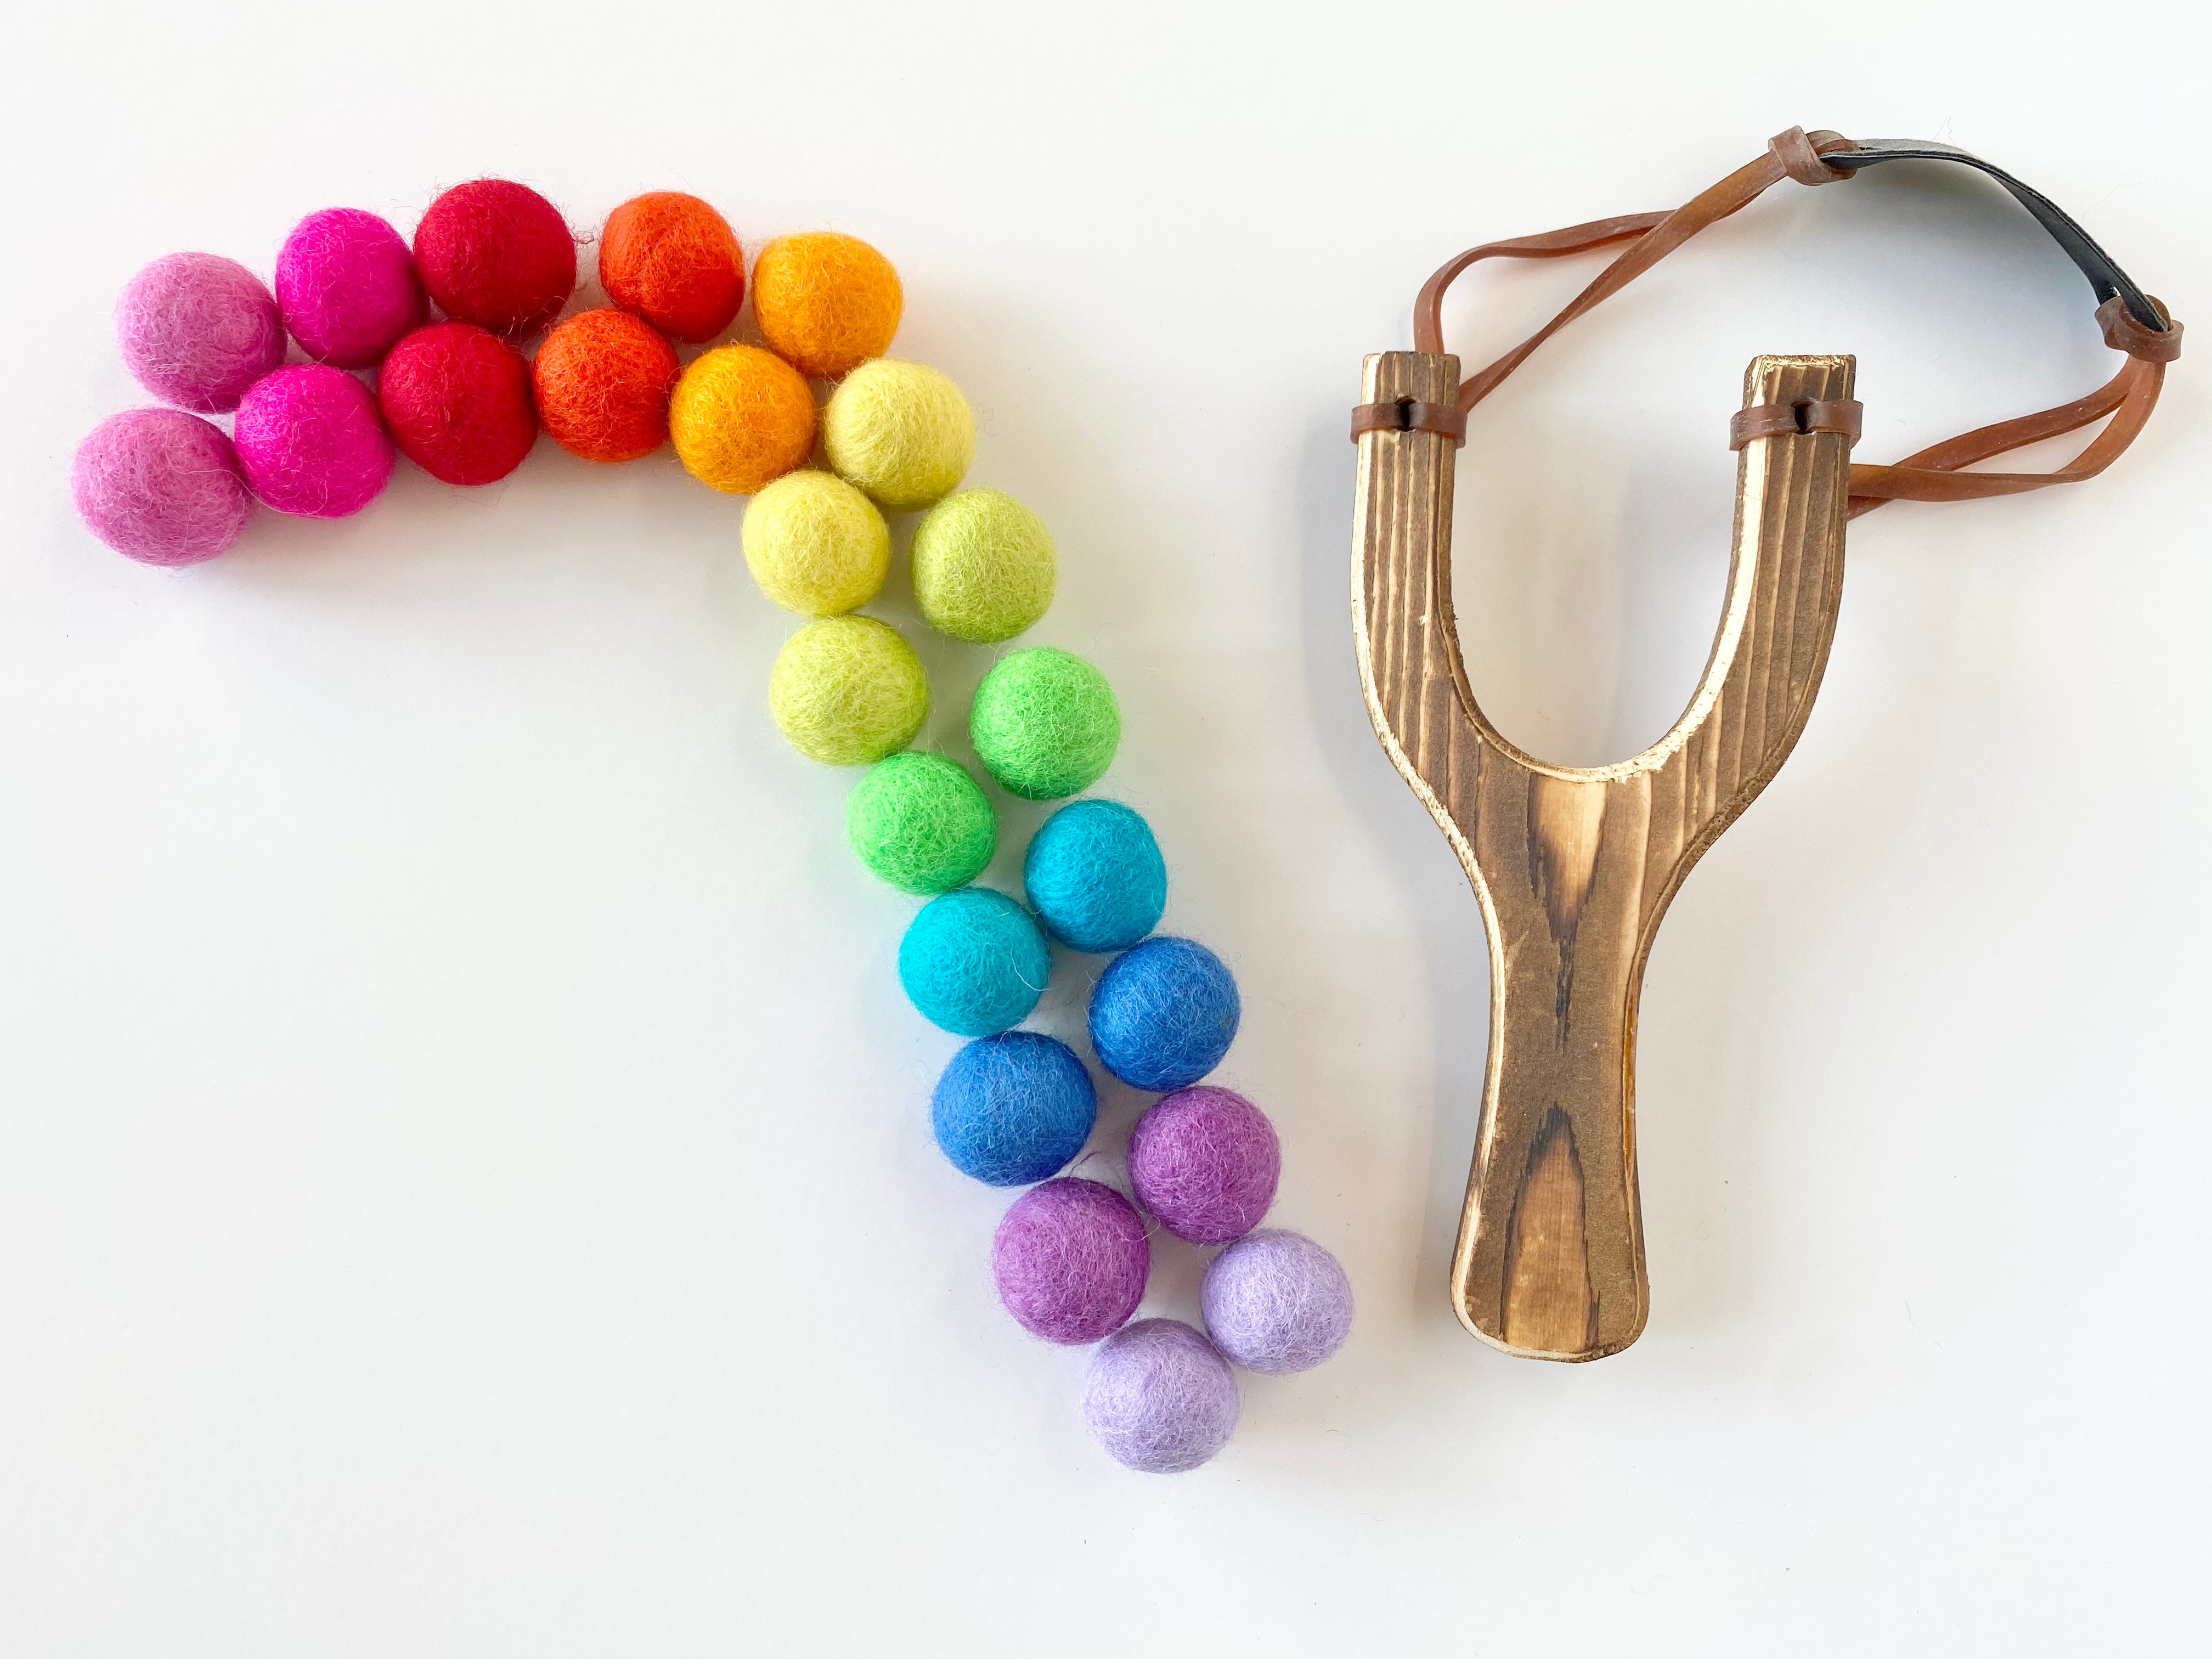 Wooden Slingshot & Felt Balls  Gulel or Catapult - Bloon Toys